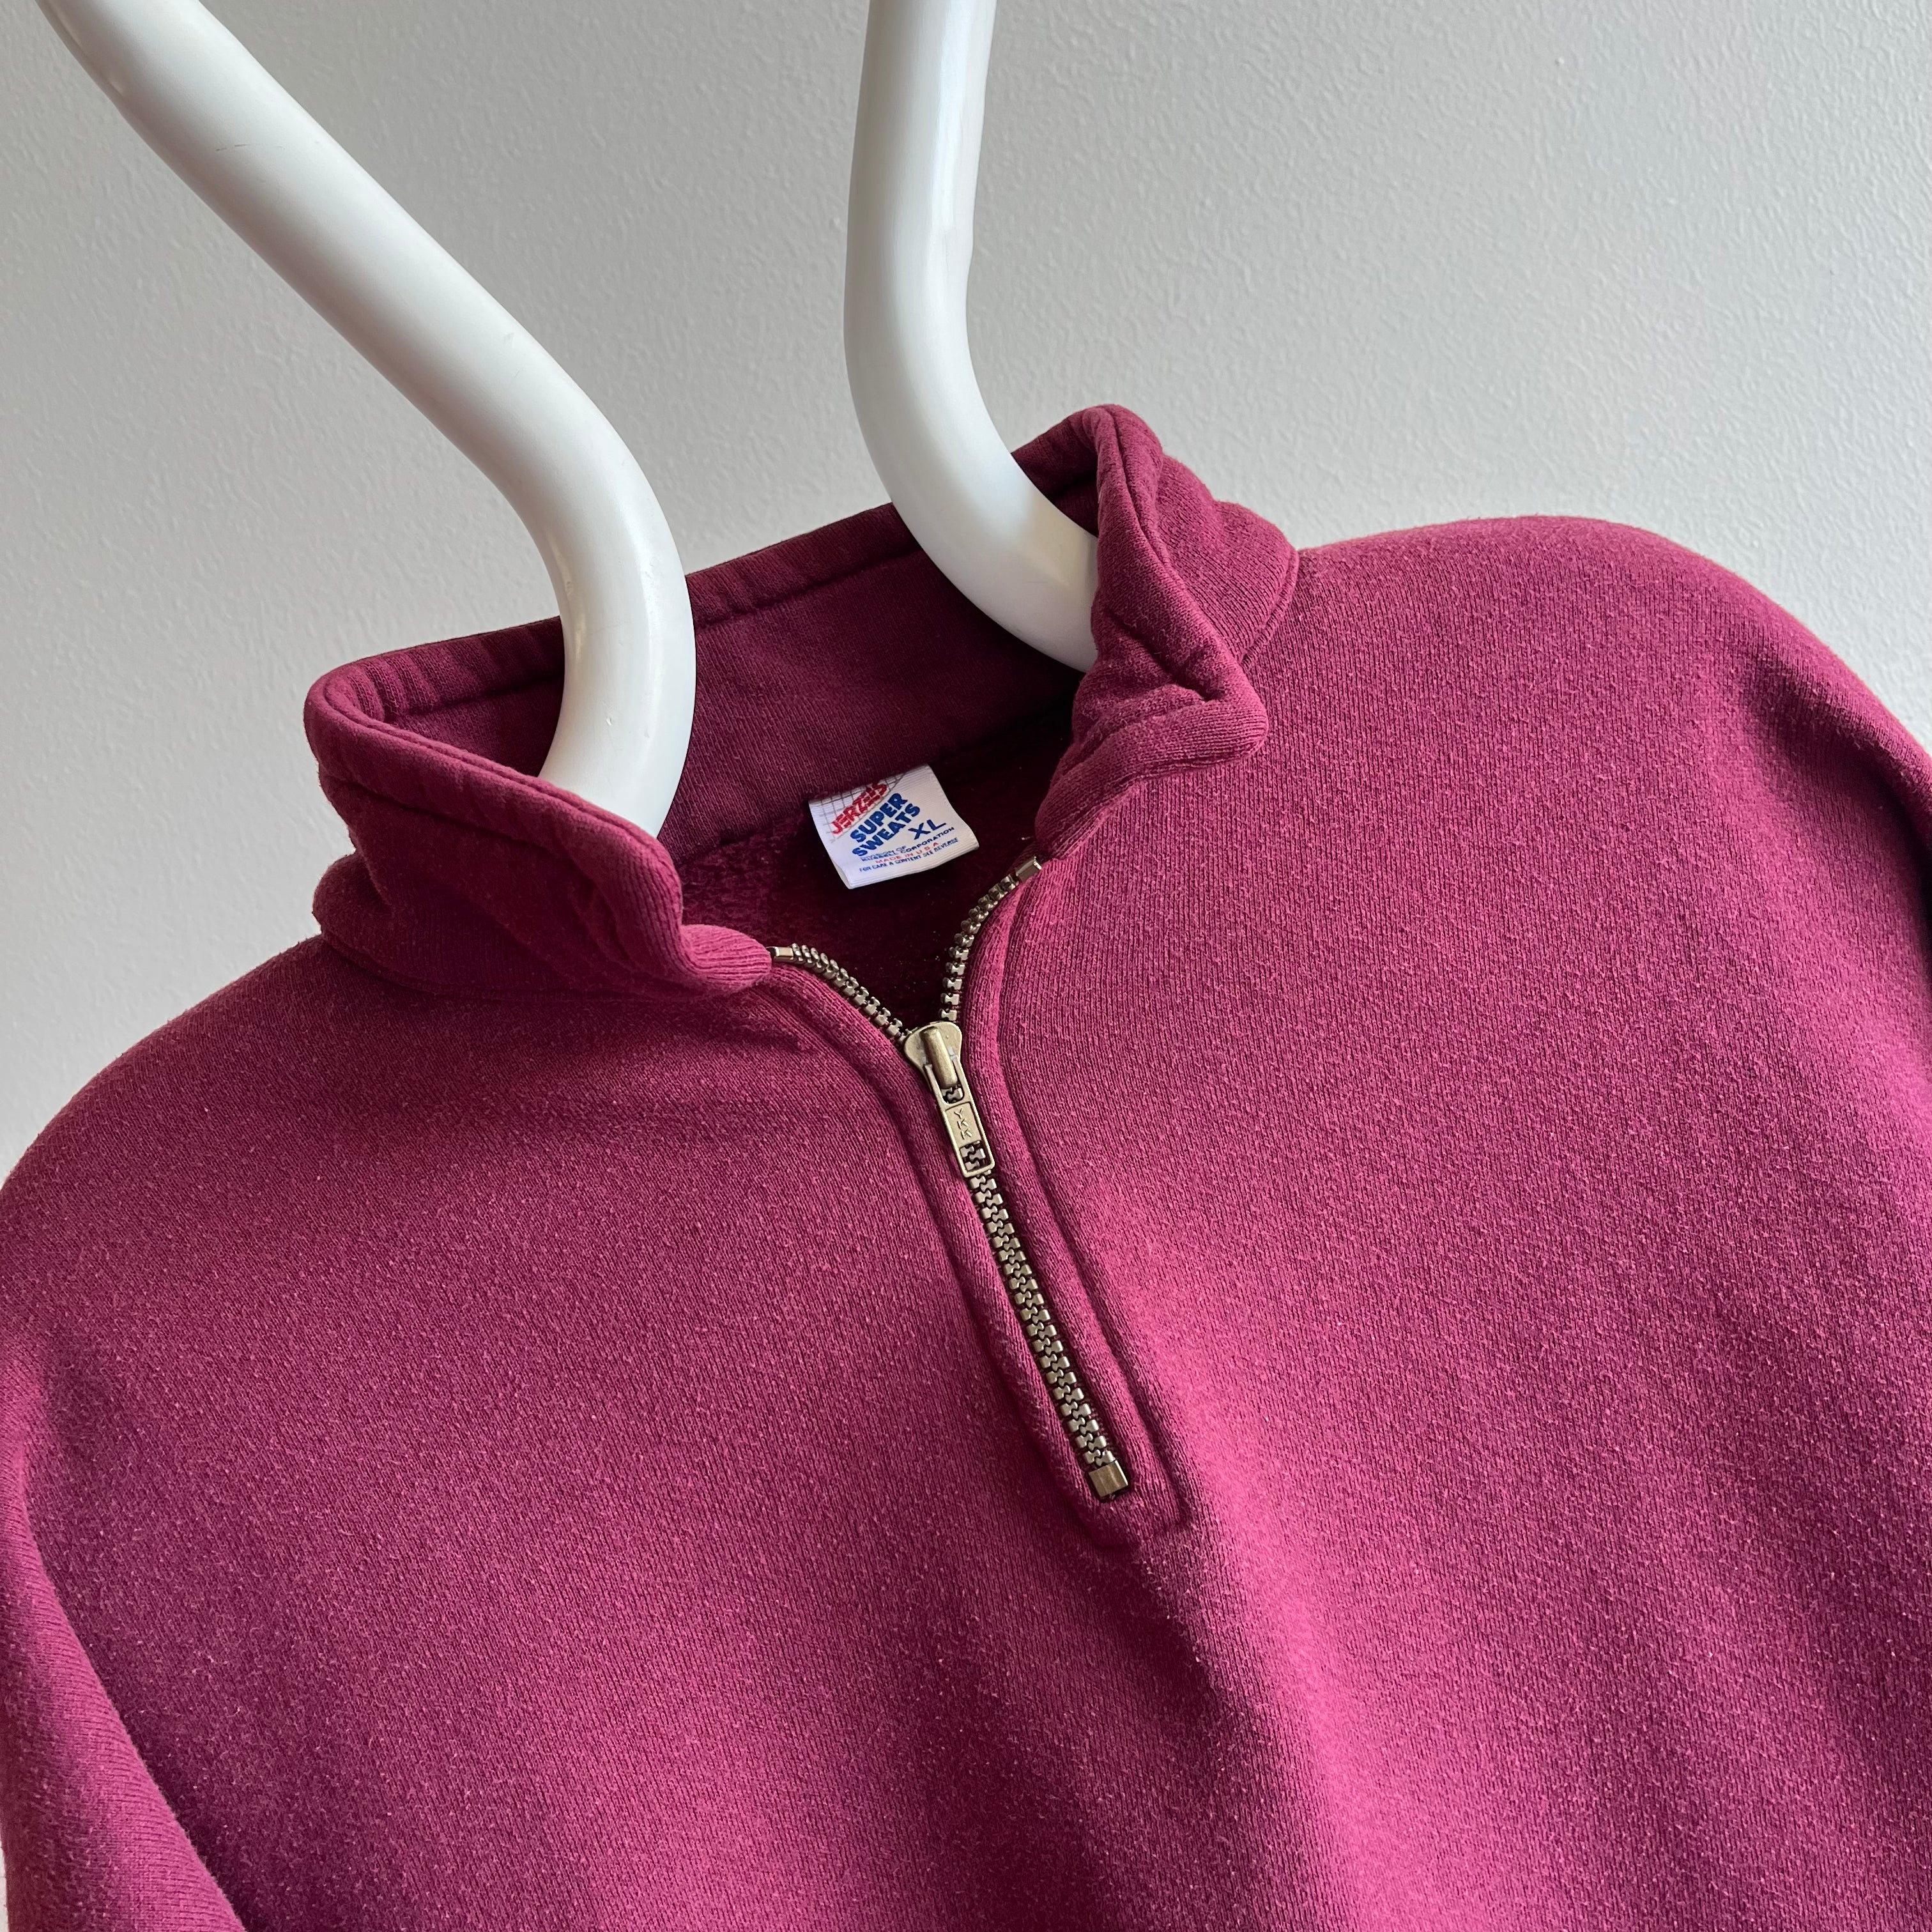 1980s Jerzees Super Sweats 1/4 Zip Collared Sweatshirt